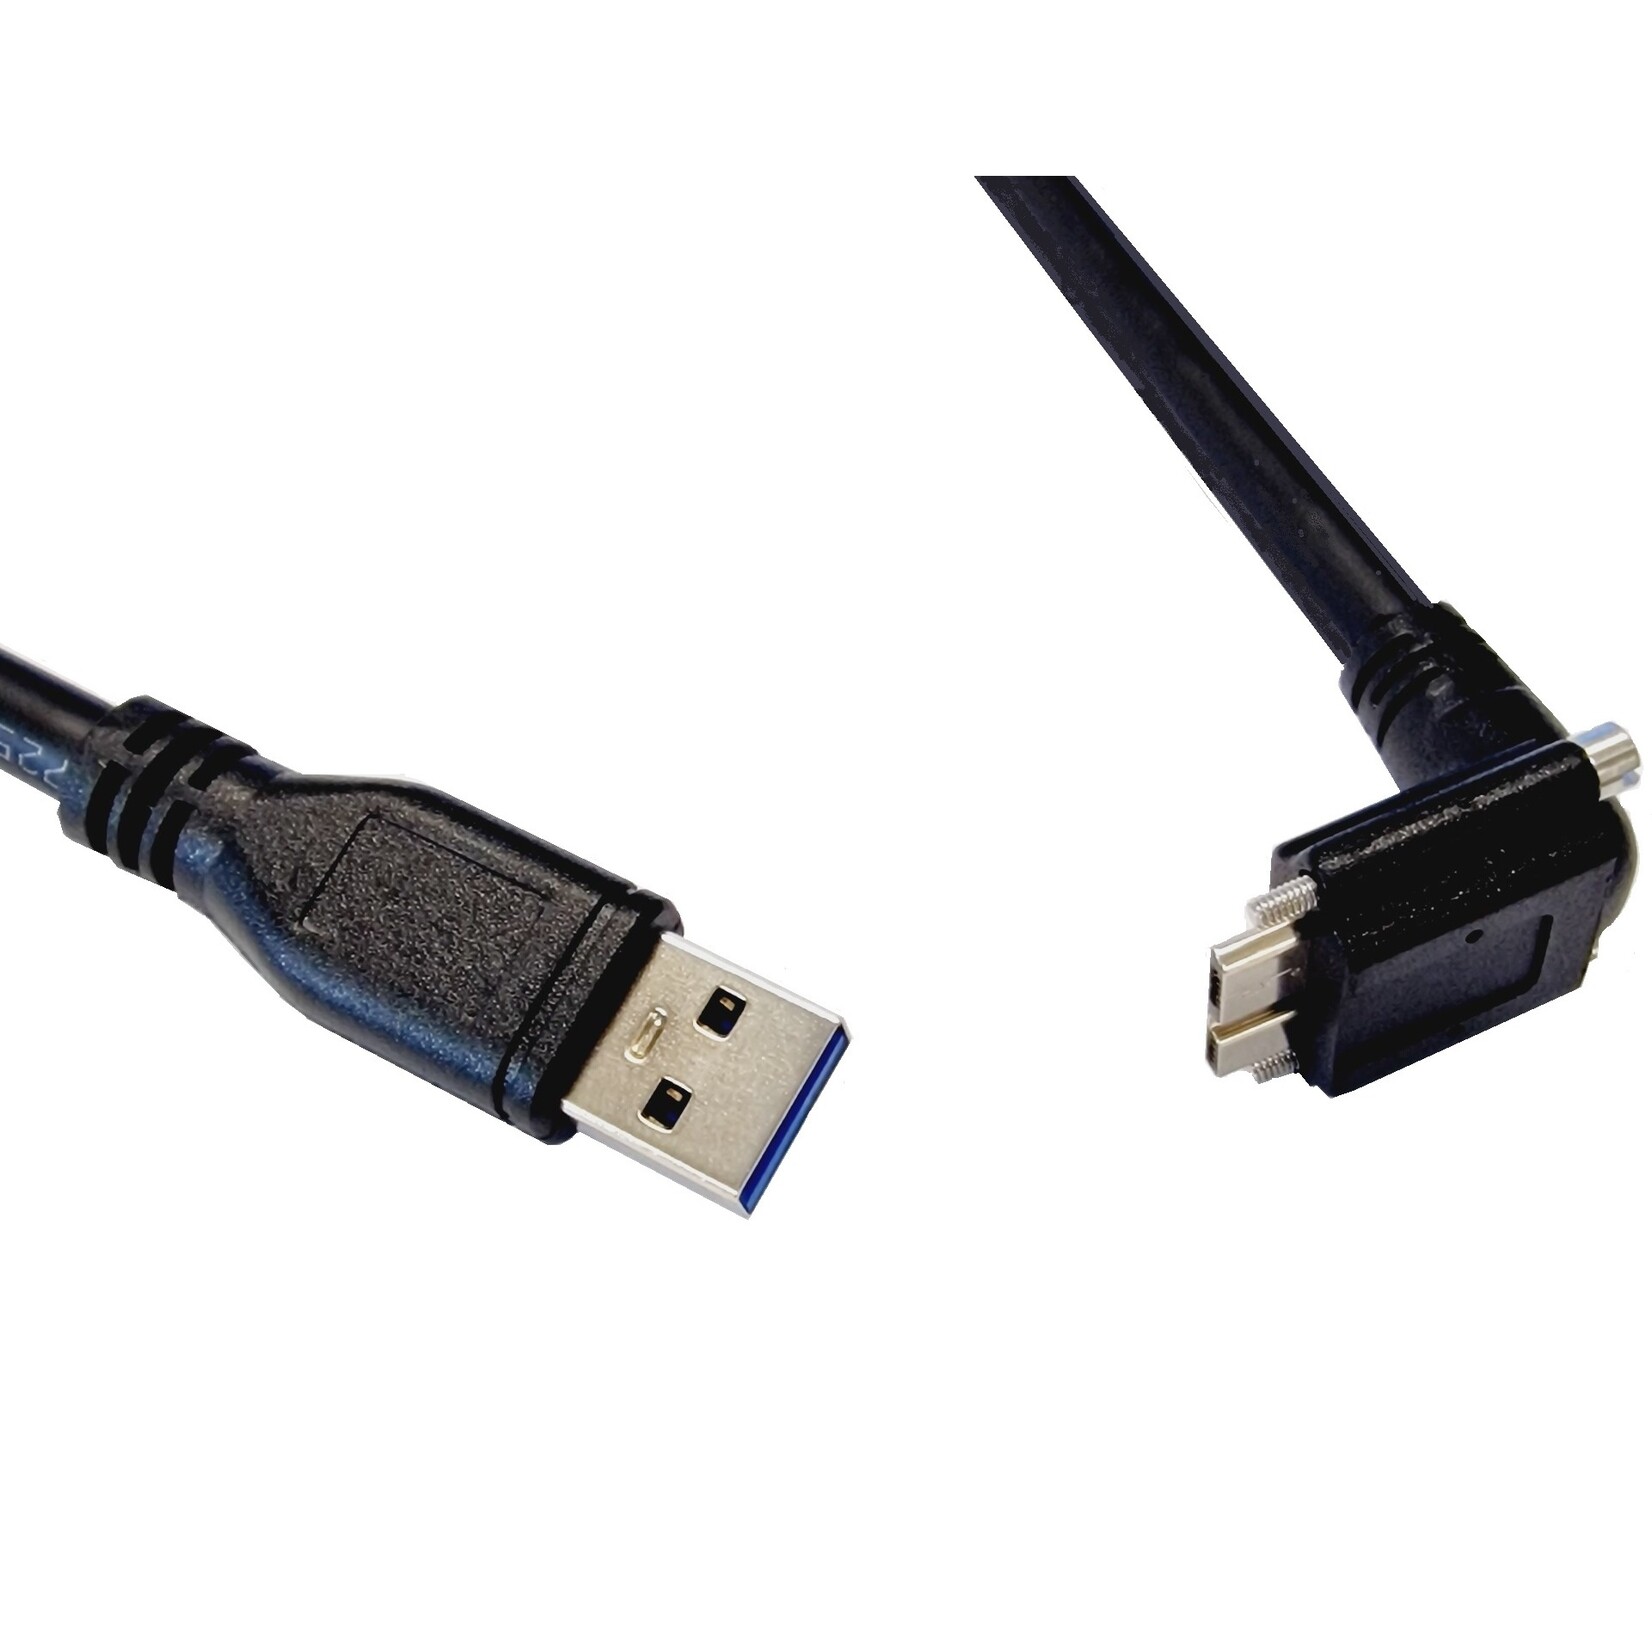 Cabo USB 3, USB Mico B com parafusos, inclinado para a frente, com 5 metros de comprimento